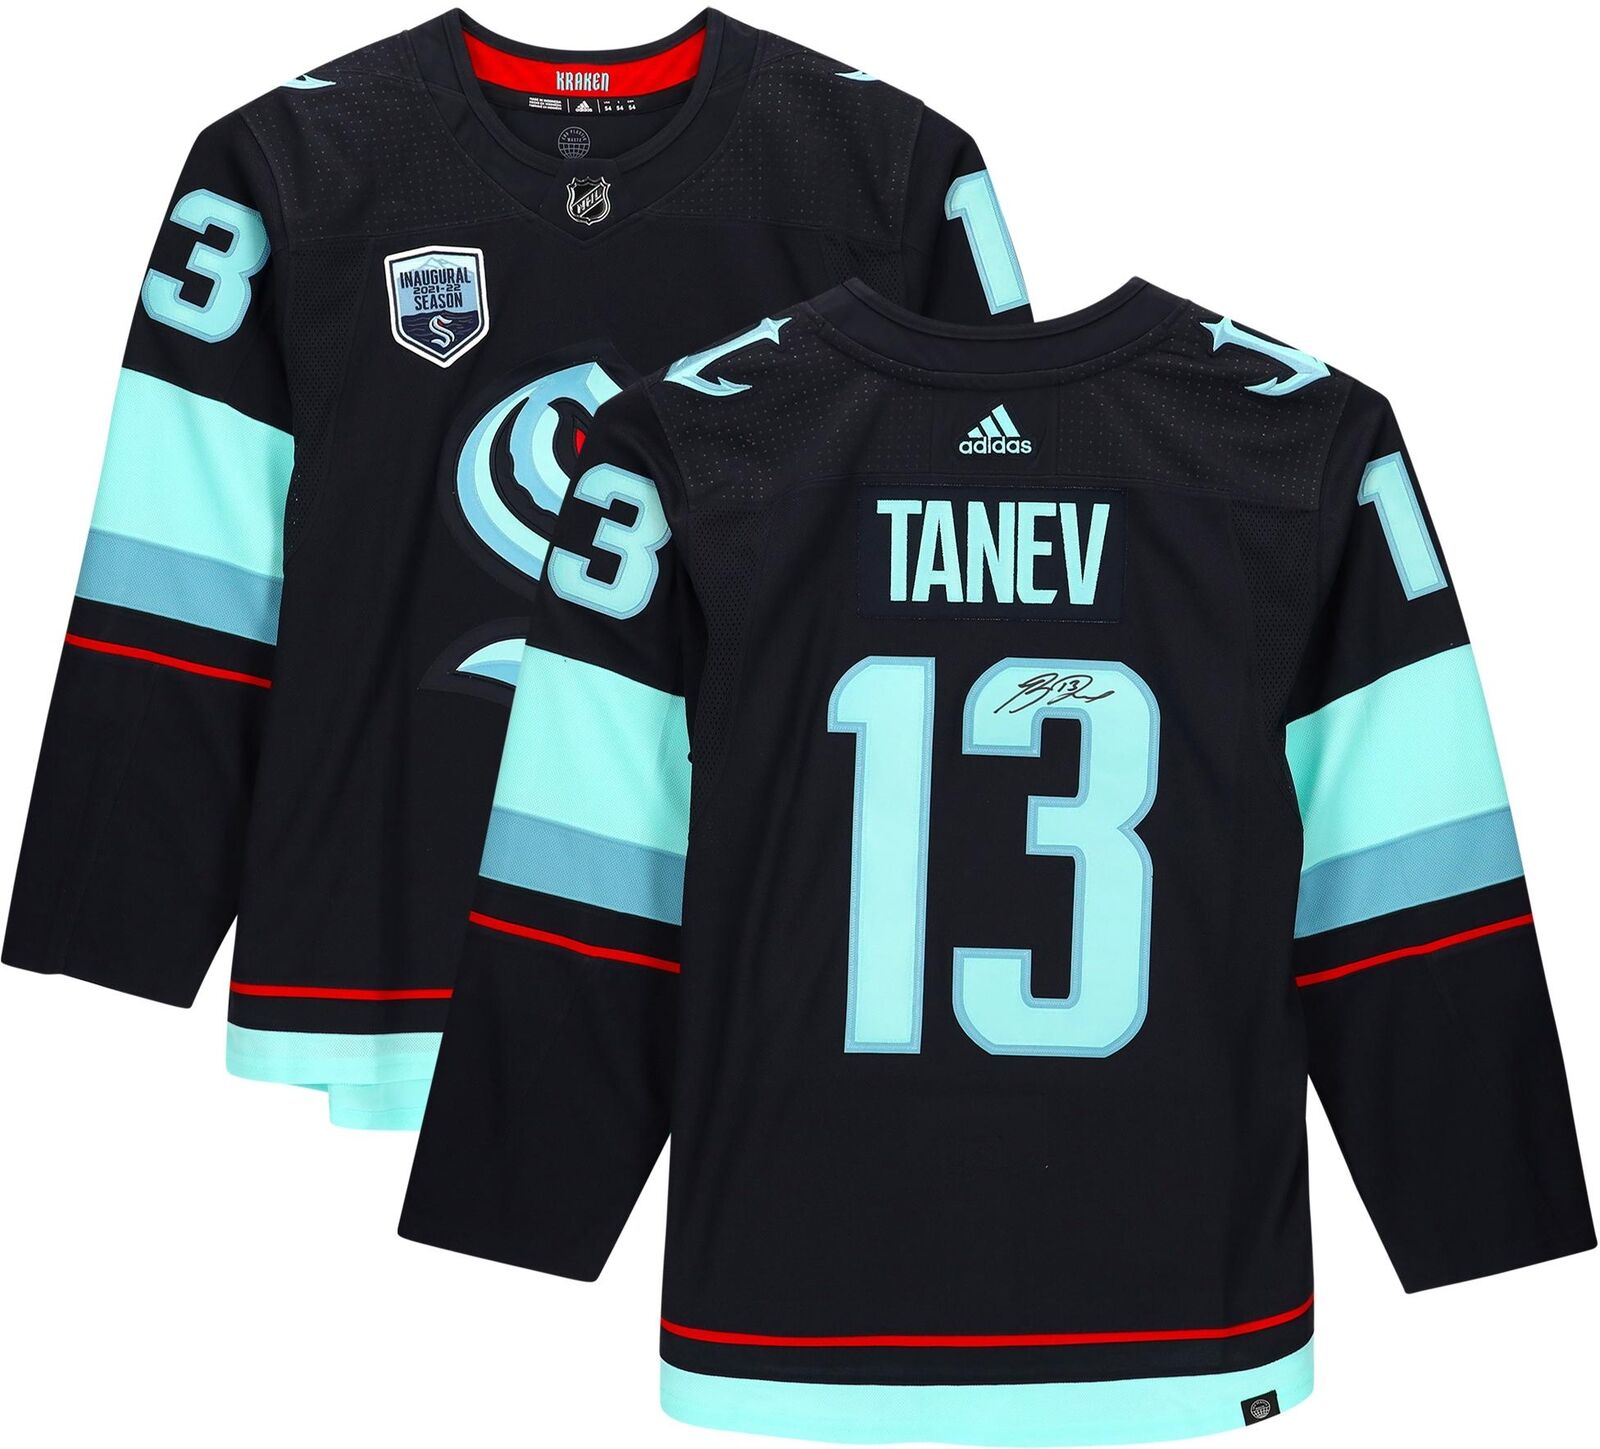 Brandon Tanev Seattle Kraken Signed Adidas Jersey Inaugural Season Jersey Patch